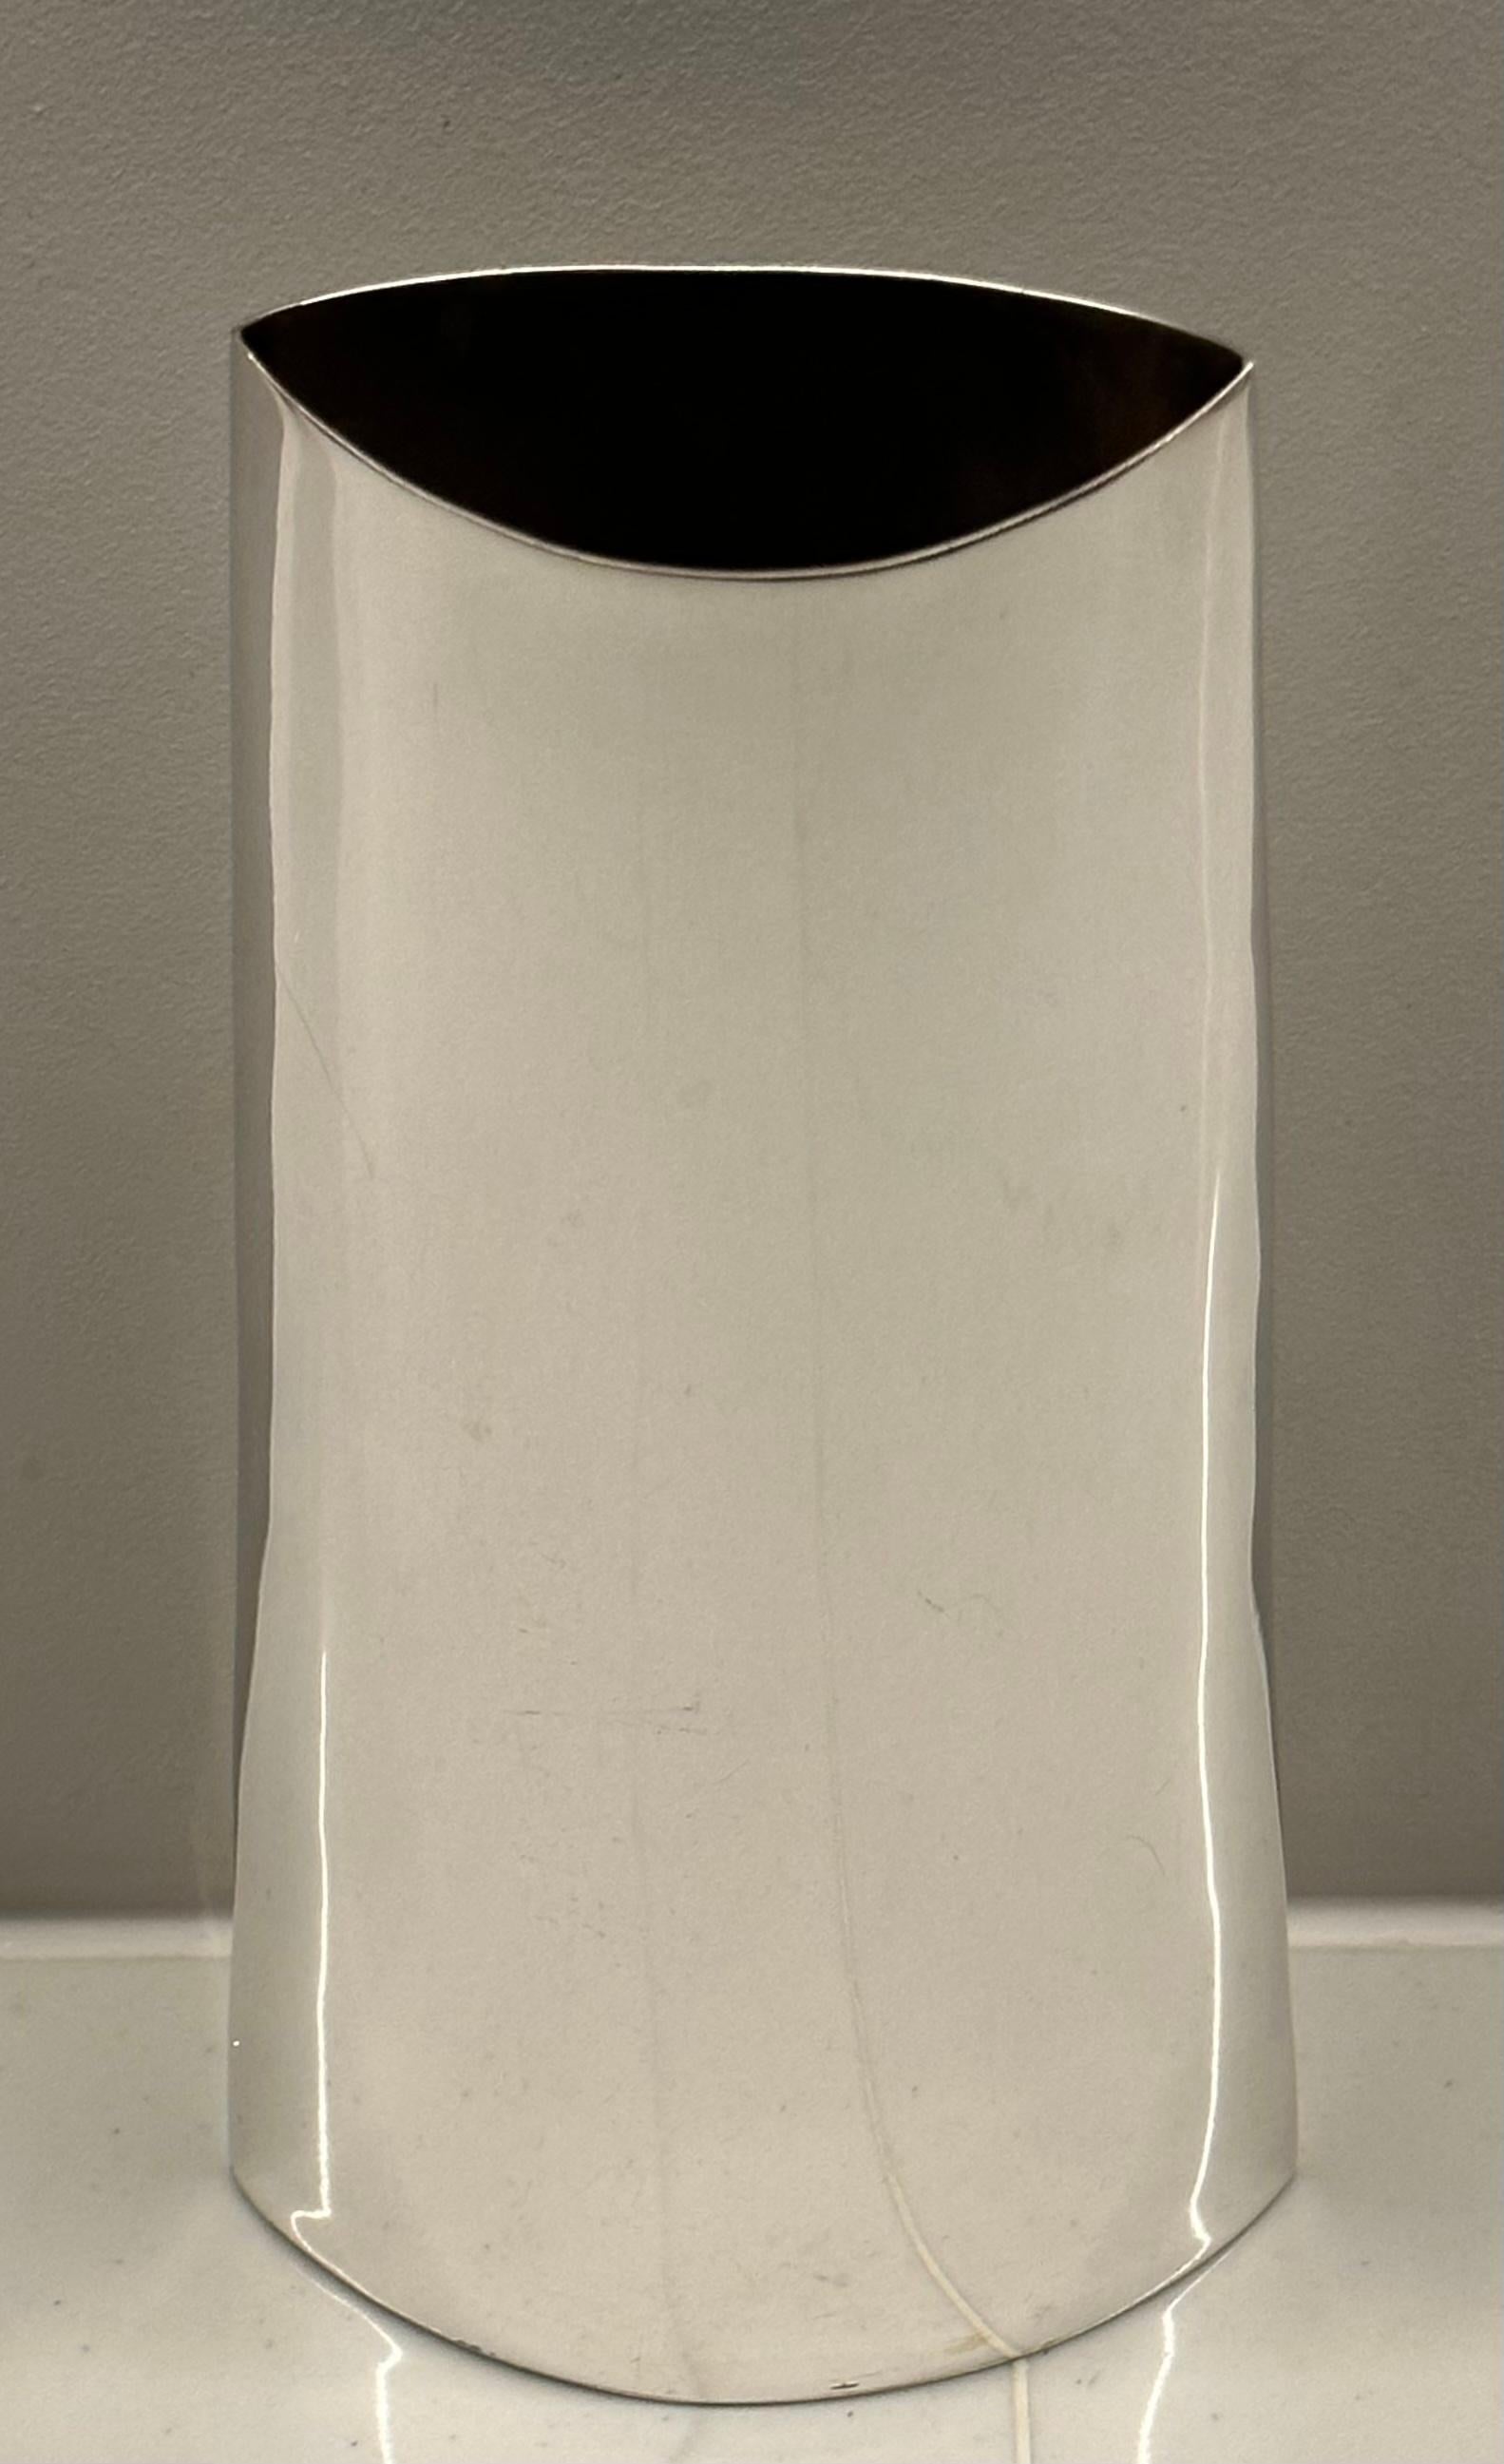 Italienische versilberte Vase aus den 1970er Jahren mit geschwungener Form, breiterem Boden und schmalerem oberen Teil. Er hat eine glatte, polierte Oberfläche und ein schlichtes, elegantes Design. 

Die Vase hat eine ausgestellte Öffnung, ist 4,5